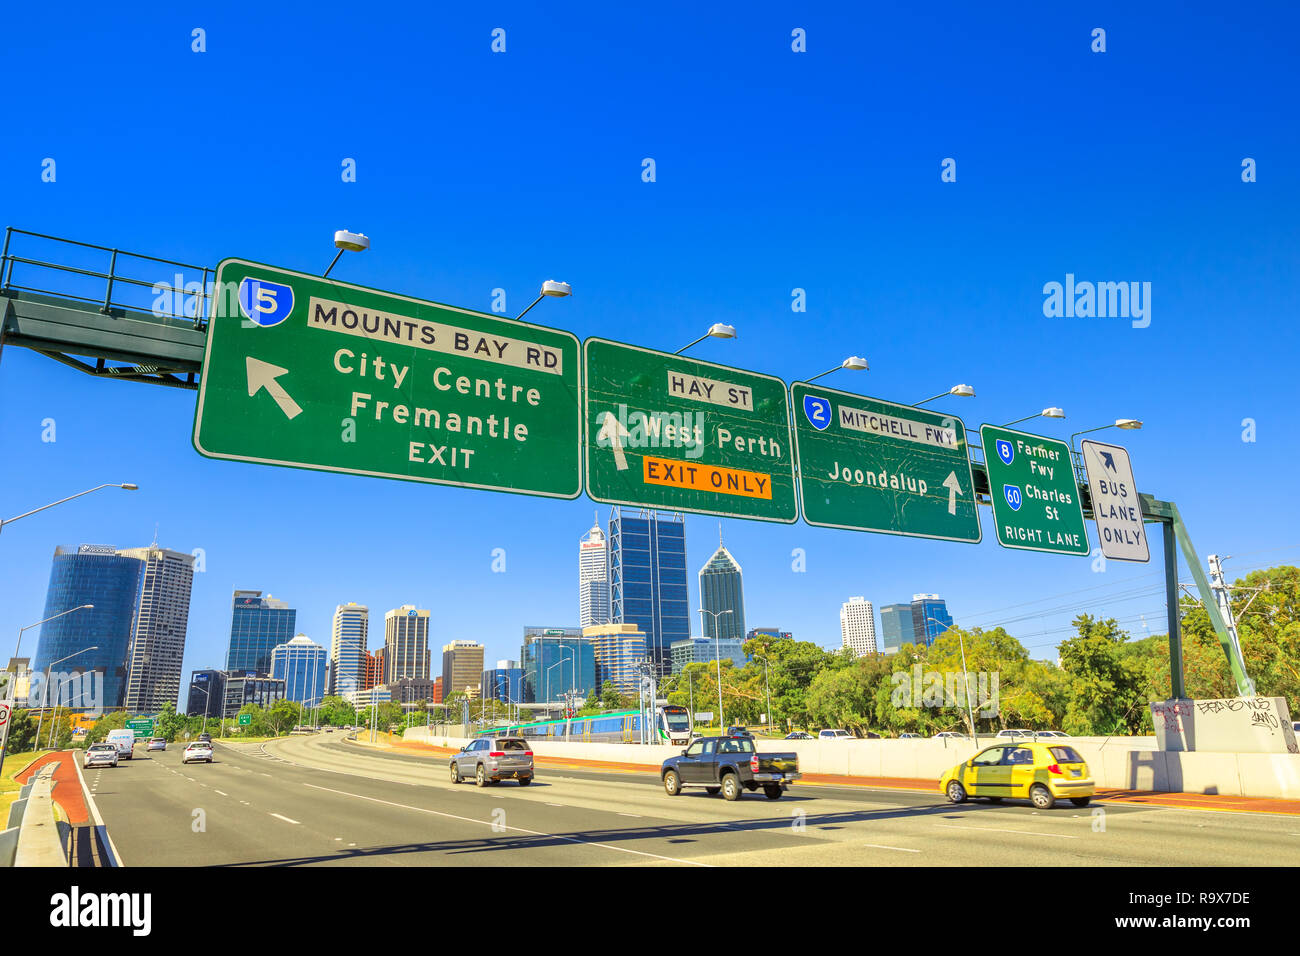 Perth, Australie occidentale - Jan 3, 2018 : Perth route autoroute signe du centre-ville de Fremantle, West Perth, Jondalup, agriculteur Fwy et Charles St dans le centre-ville de Perth près de John Oldham Park. Scène urbaine de la circulation. Banque D'Images